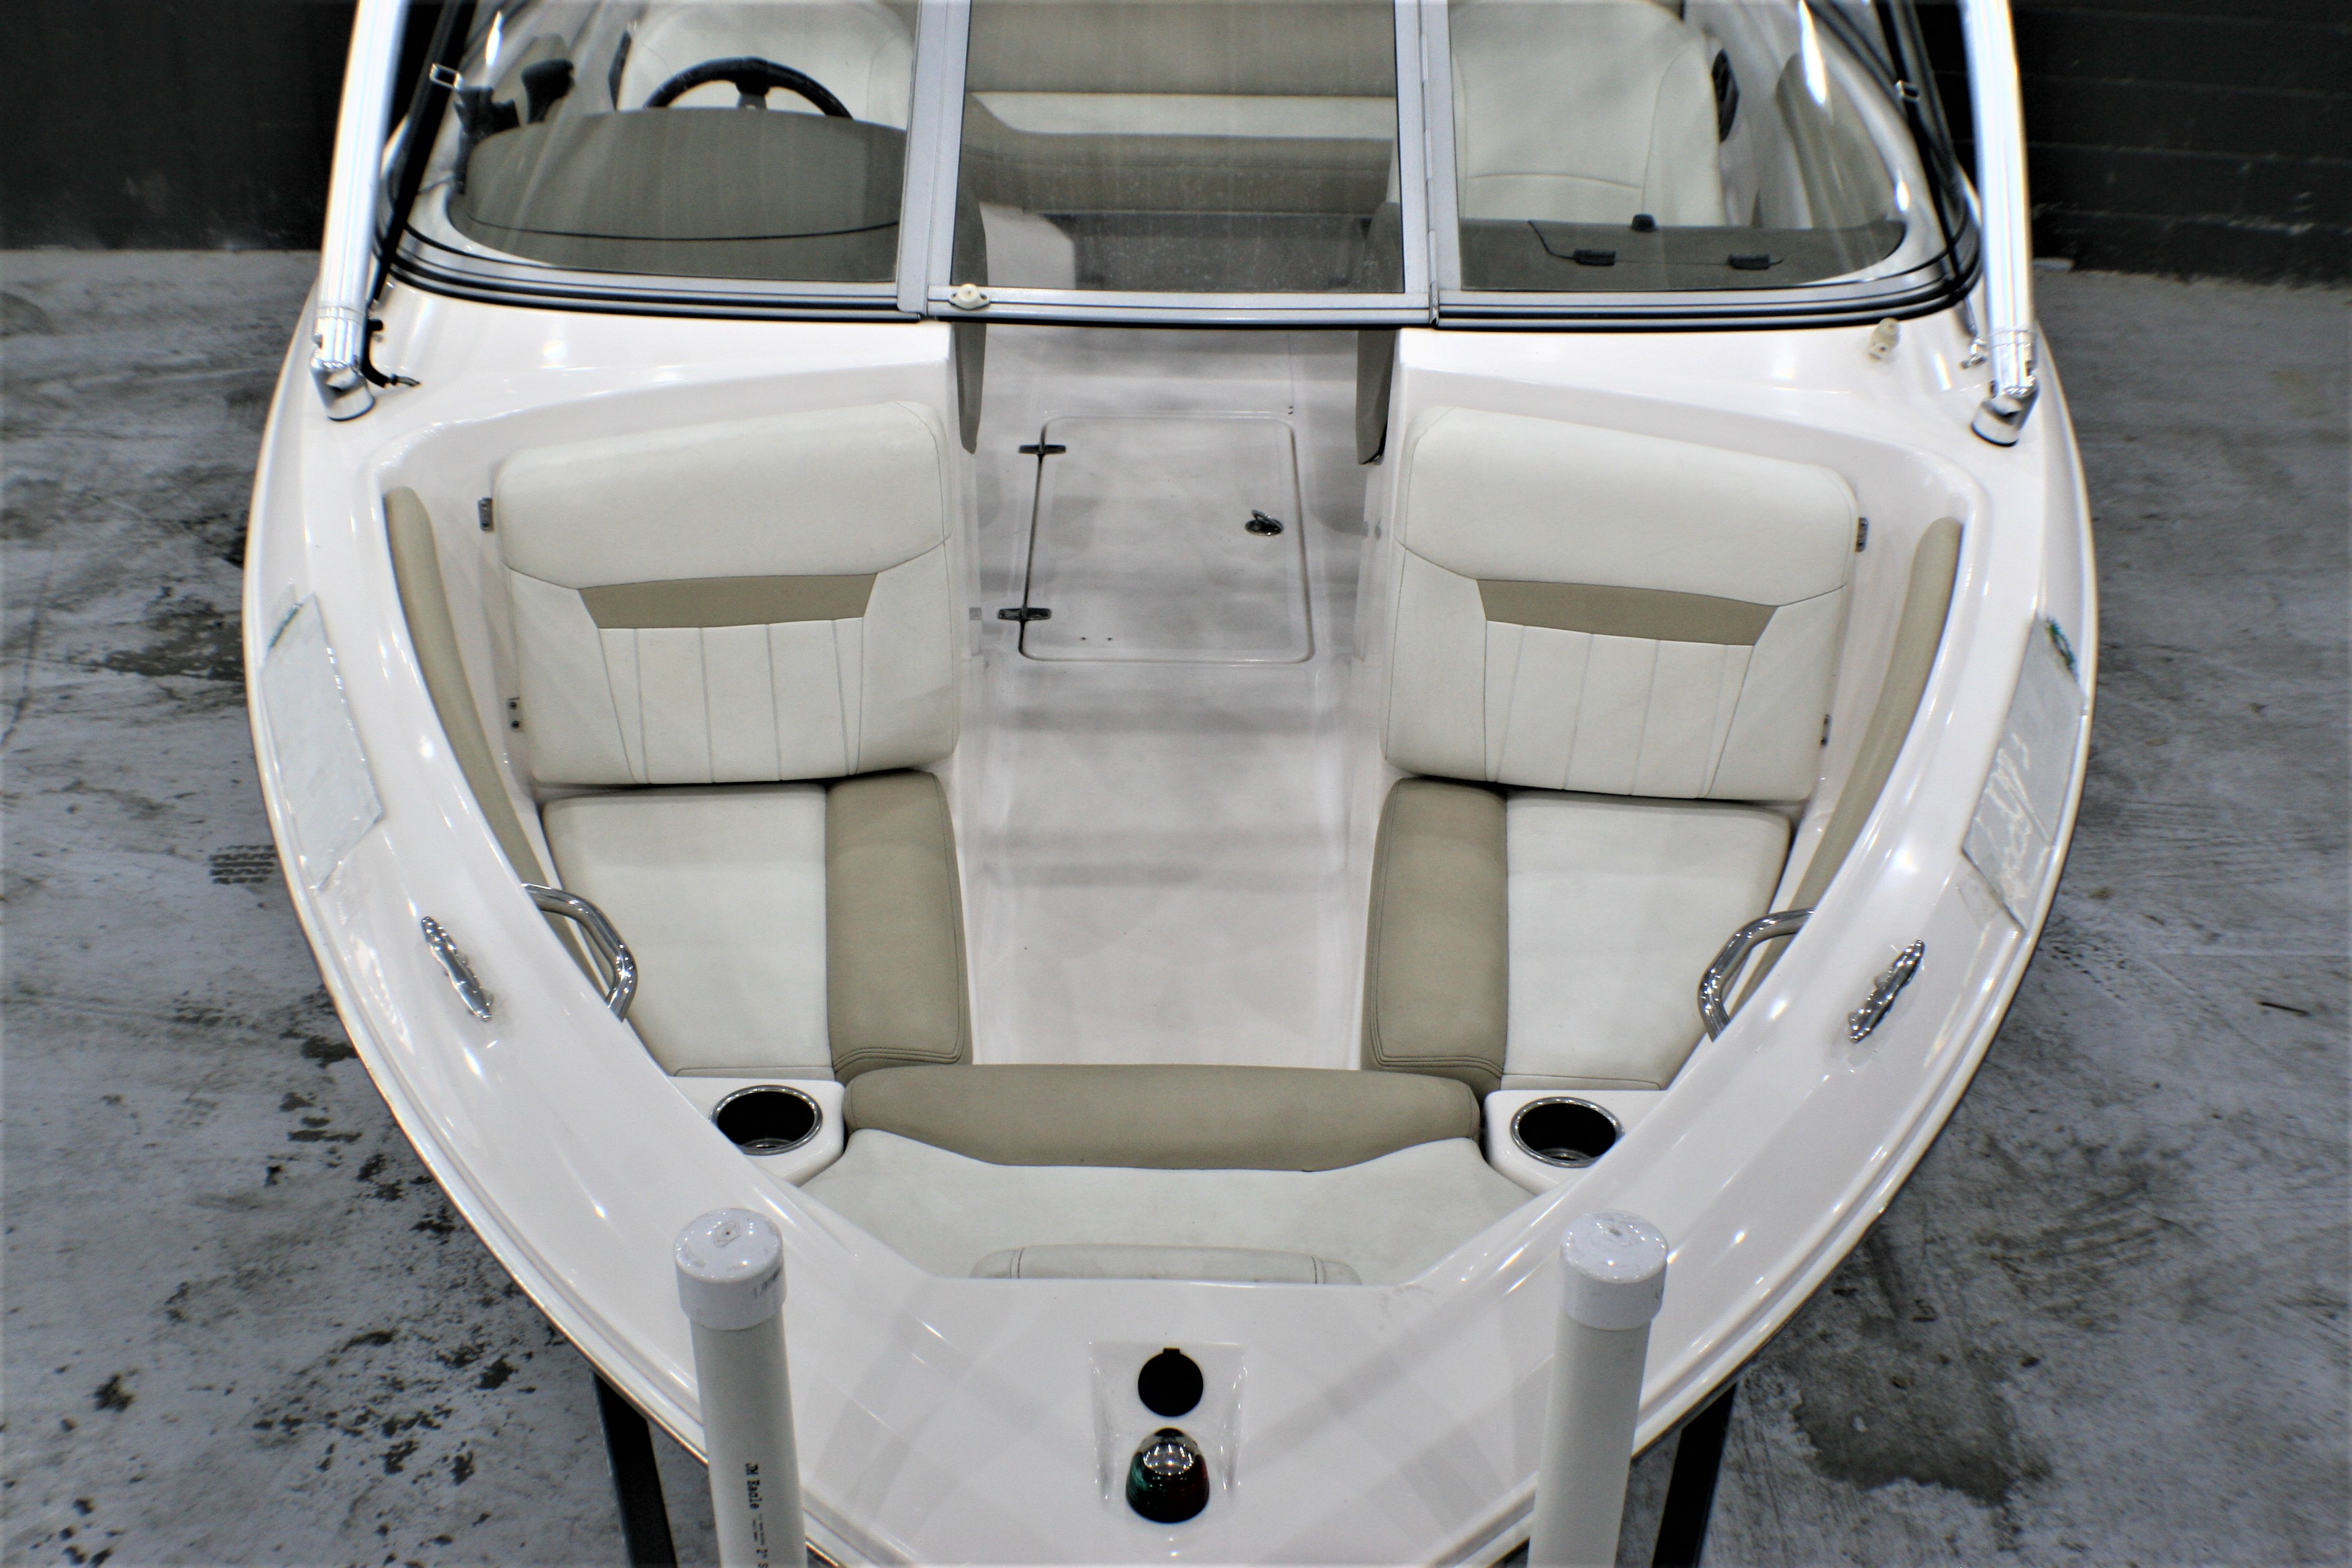 2013 Regal 1900 Power boat for sale in McQueeney, TX - image 2 